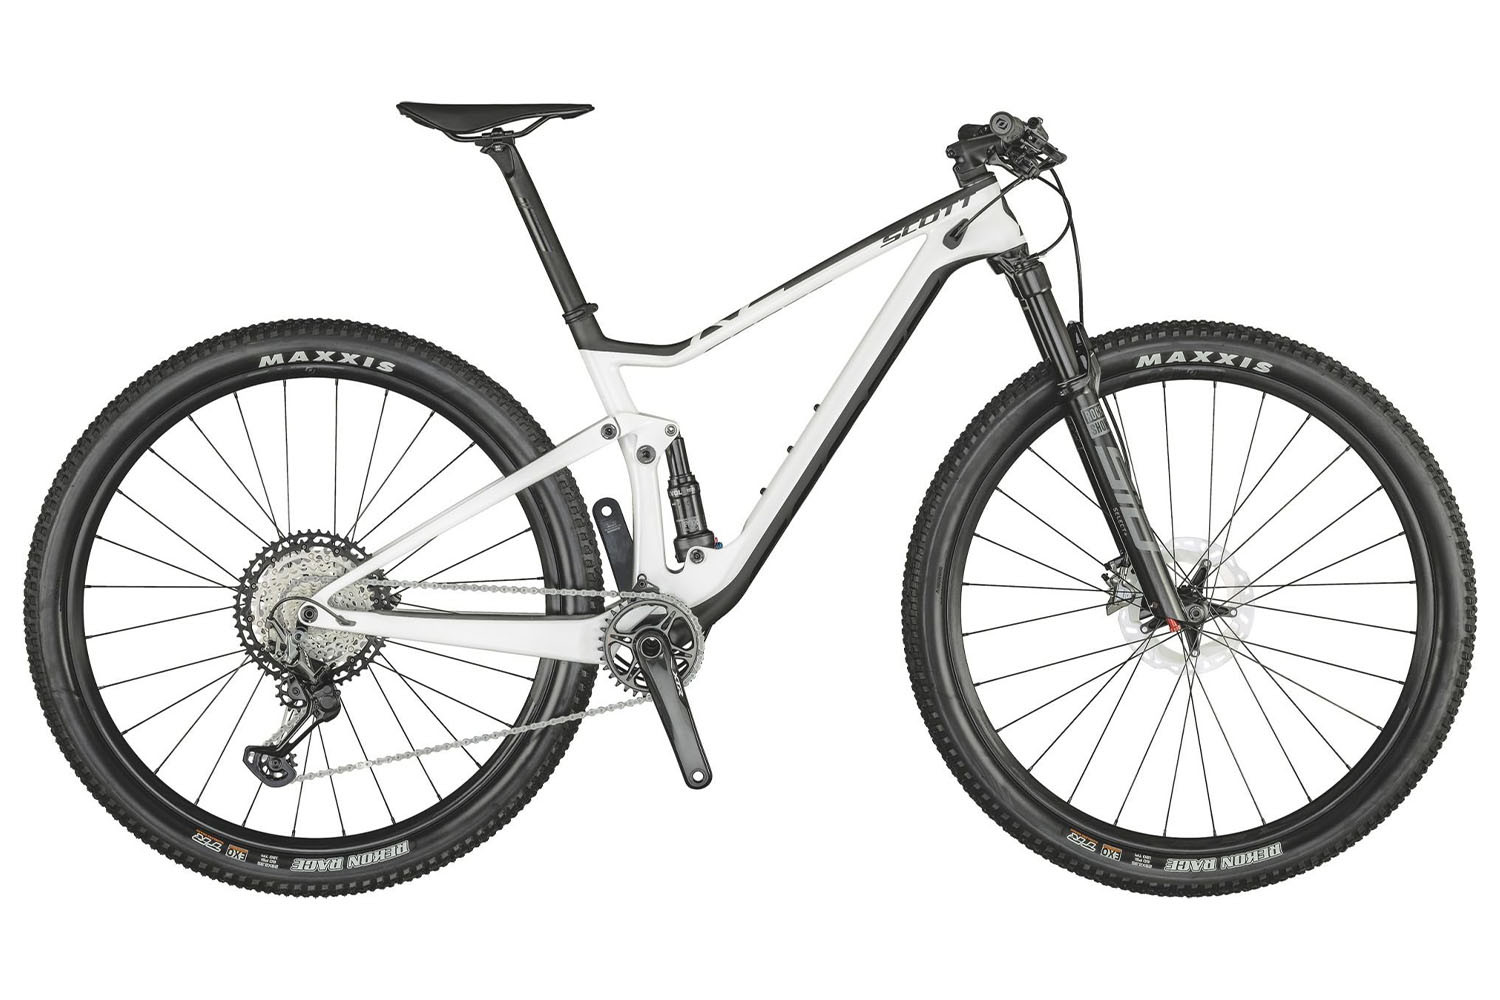  Отзывы о Двухподвесном велосипеде Scott Spark RC 900 Pro (2021) 2021